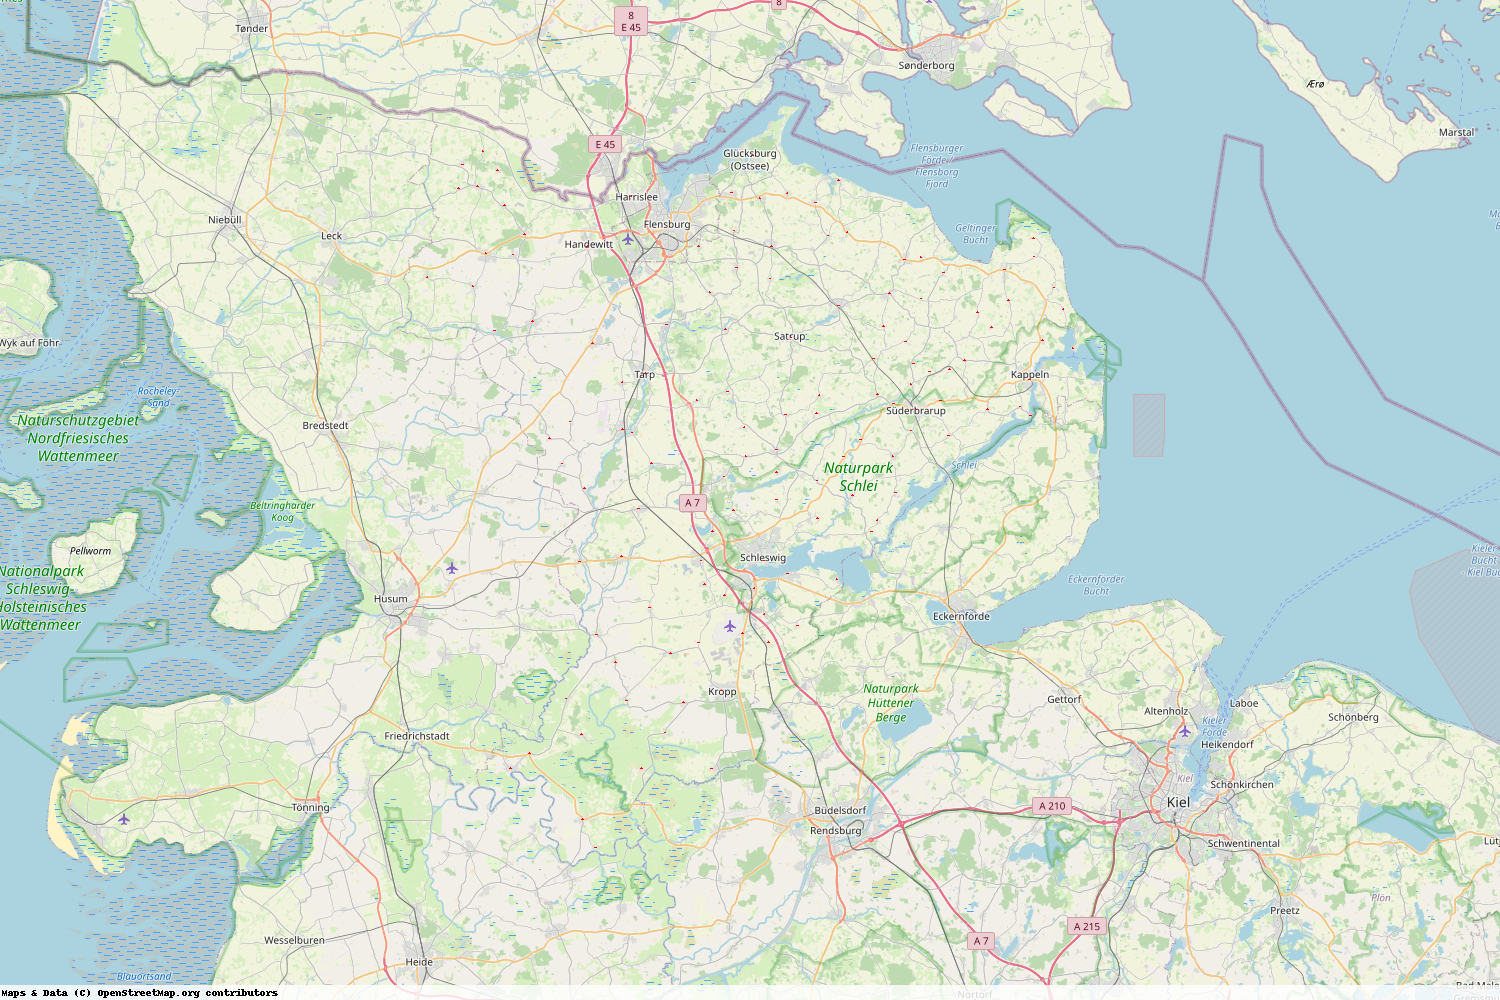 Ist gerade Stromausfall in Schleswig-Holstein - Schleswig-Flensburg?